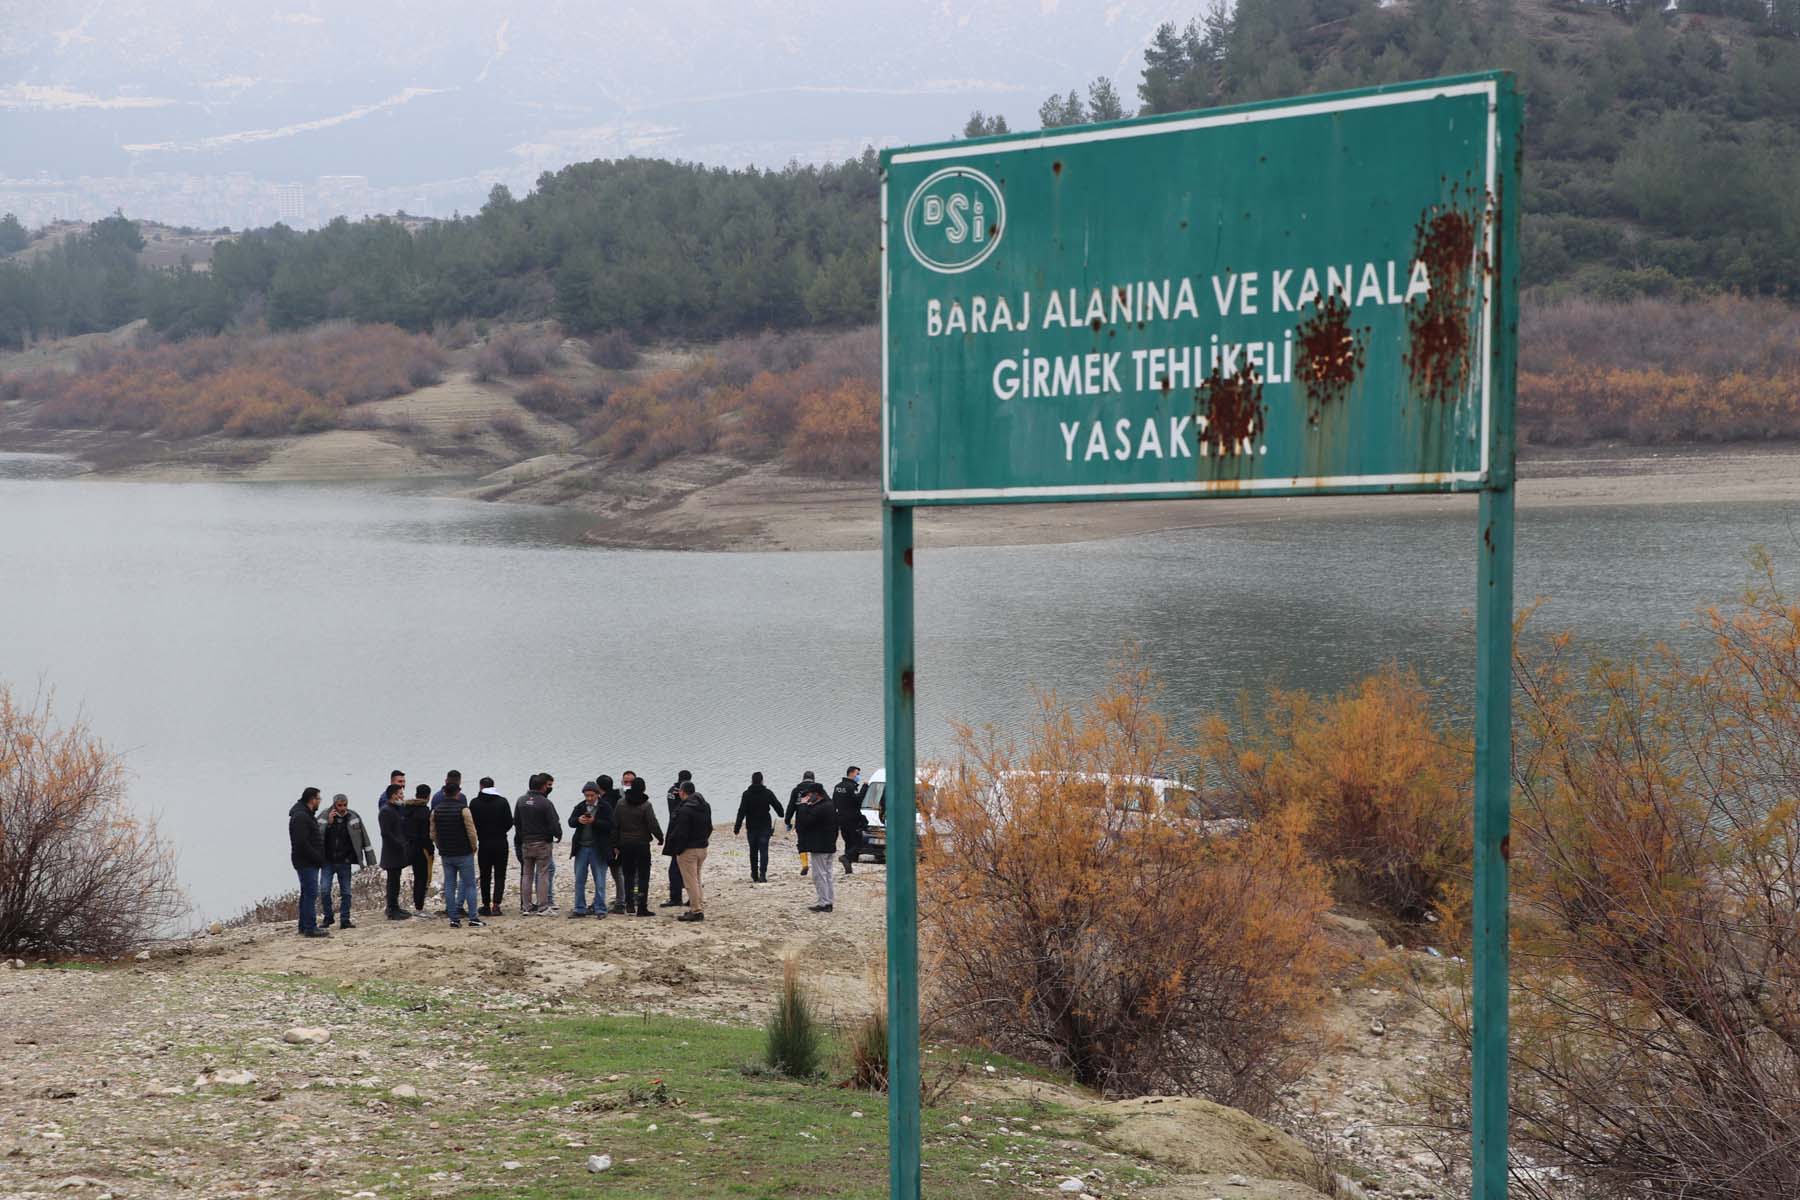 Dünden beri haber alınamıyordu! Mesut Durmuş'un cansız bedeni baraj gölünde bulundu 